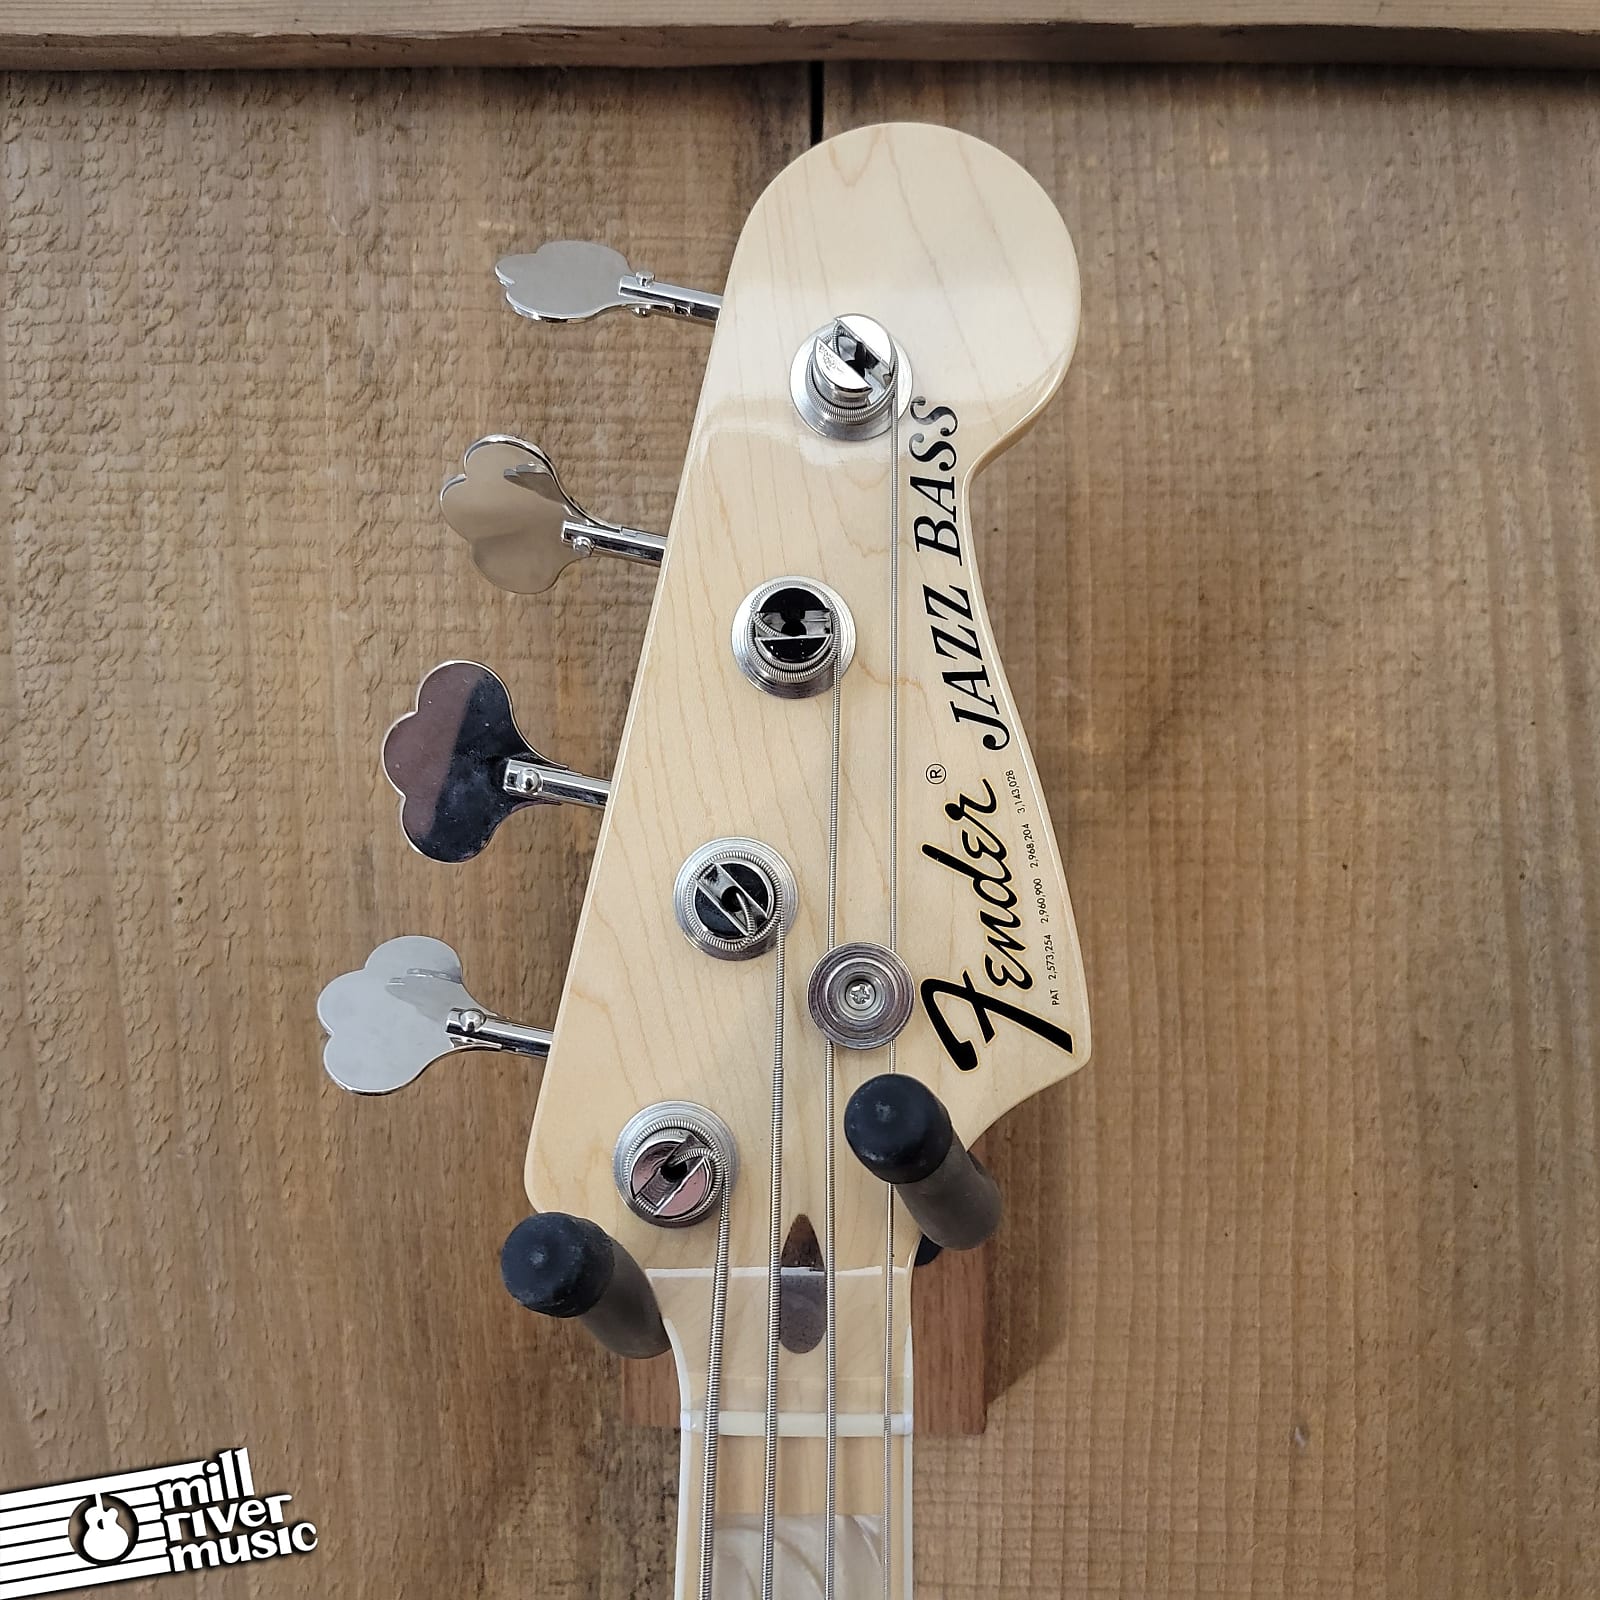 Fender USA Geddy Lee Jazz Bass Black 2023 w/ HSC Used